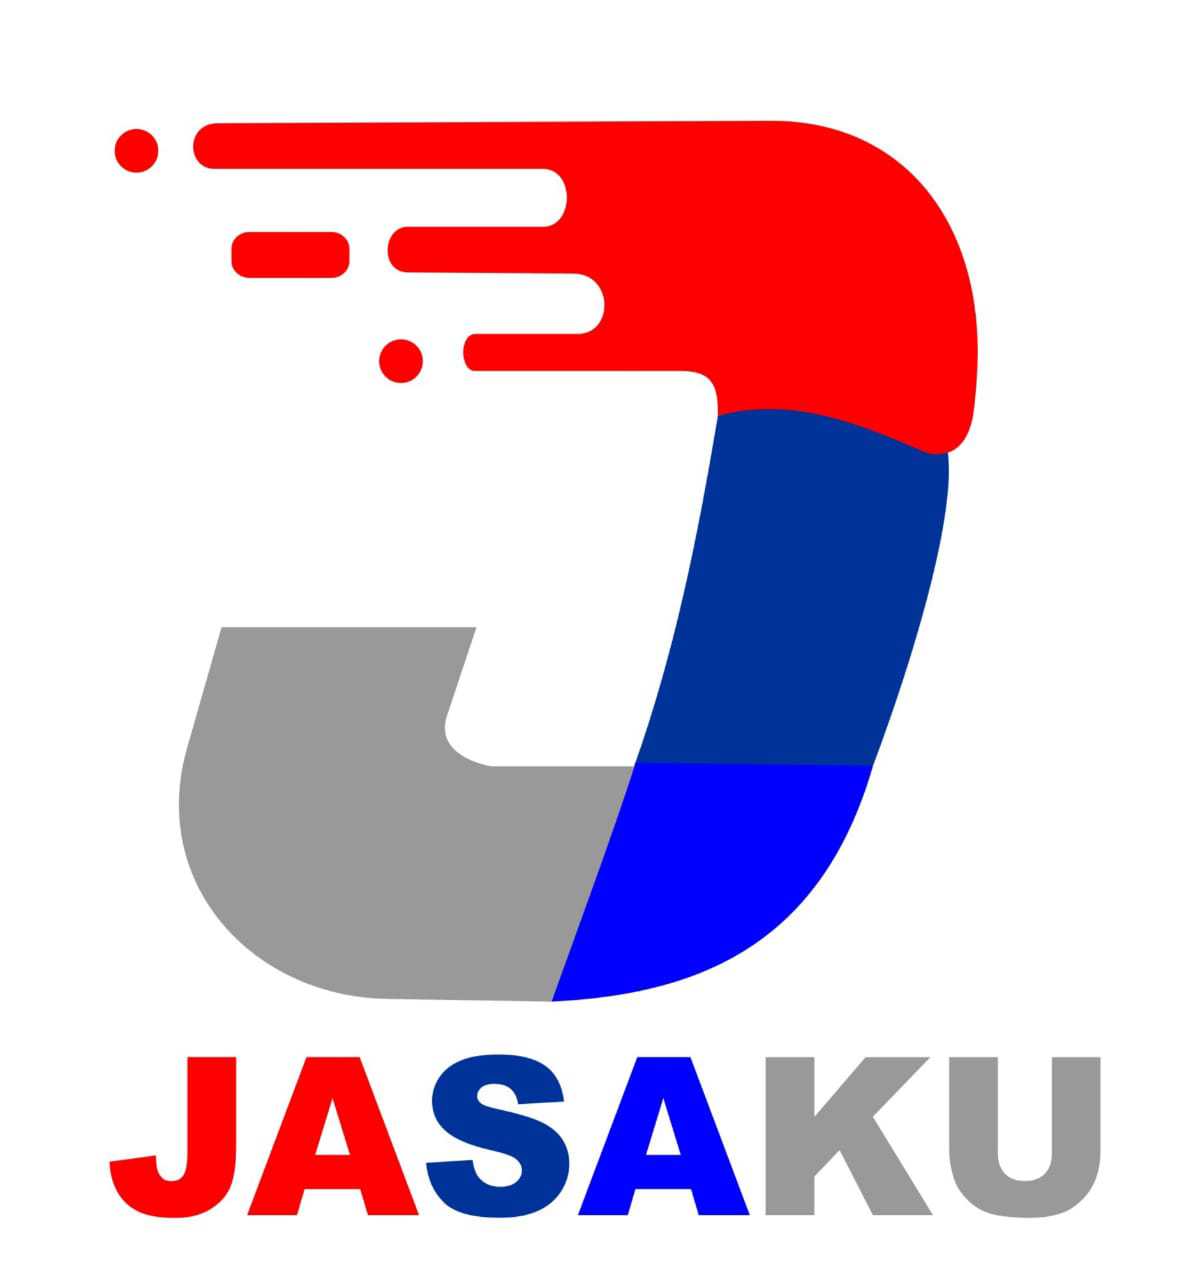 Jasaku